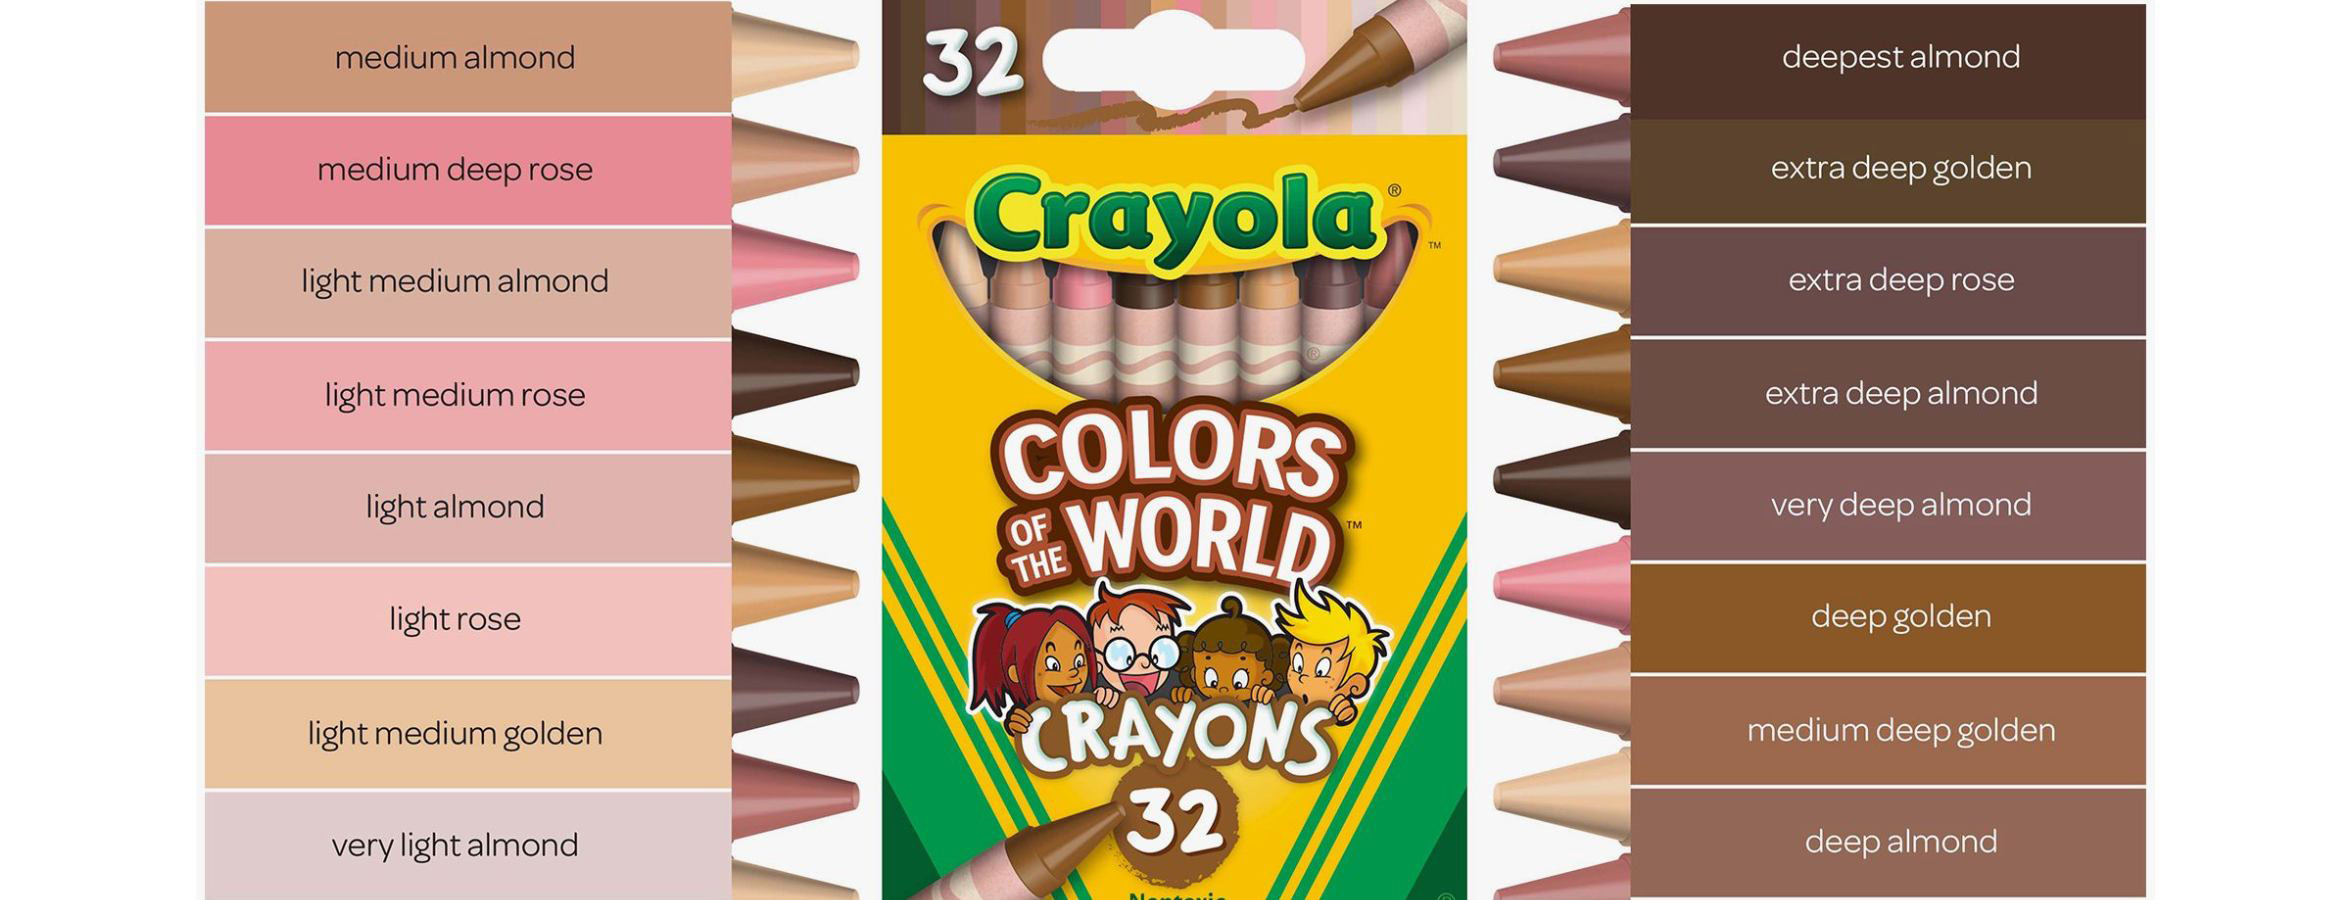 Crayola lance des crayons représentant la diversité des couleurs